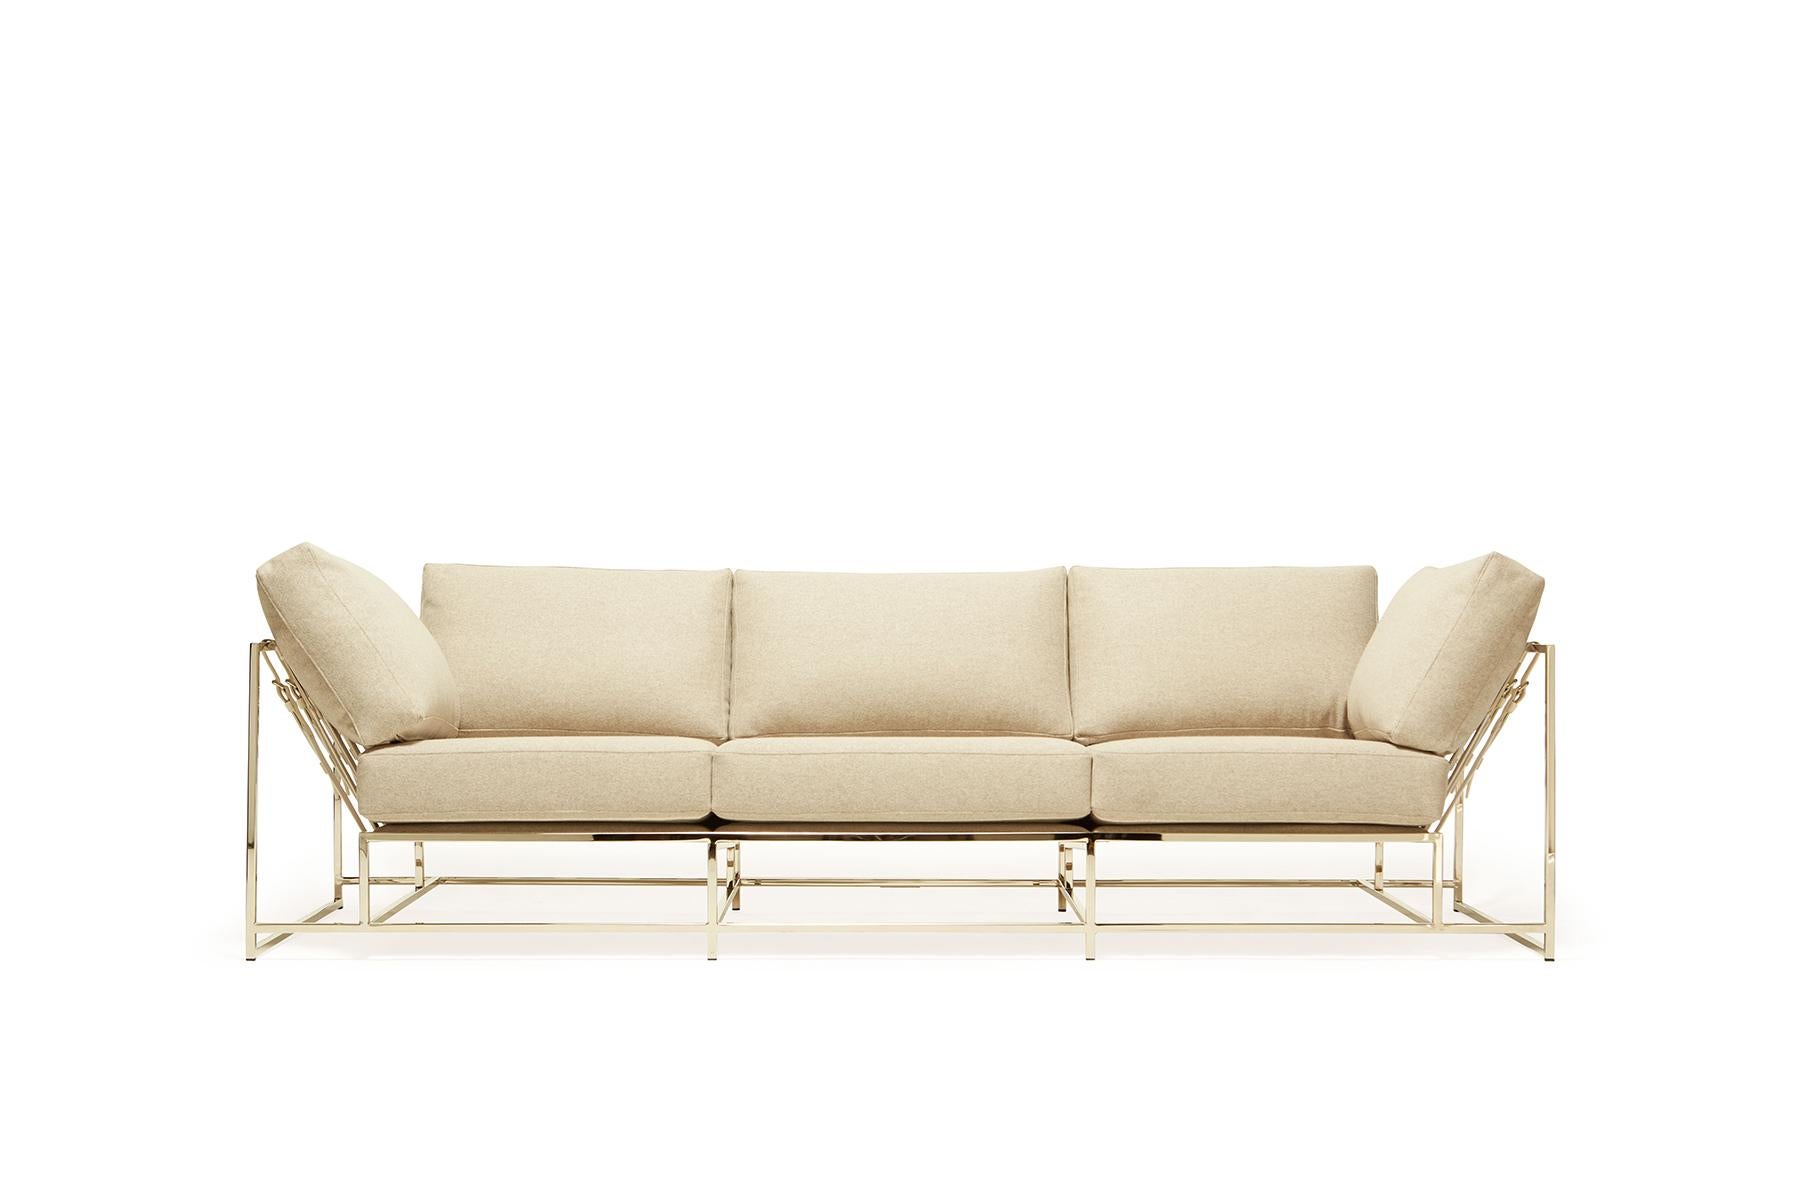 Das Inheritance Sofa von Stephen Kenn ist ebenso bequem wie einzigartig. Das Design zeichnet sich durch eine exponierte Konstruktion aus, die aus drei Elementen besteht - einem Stahlrahmen, einer weichen Polsterung und stützenden Gurten. Der tiefe